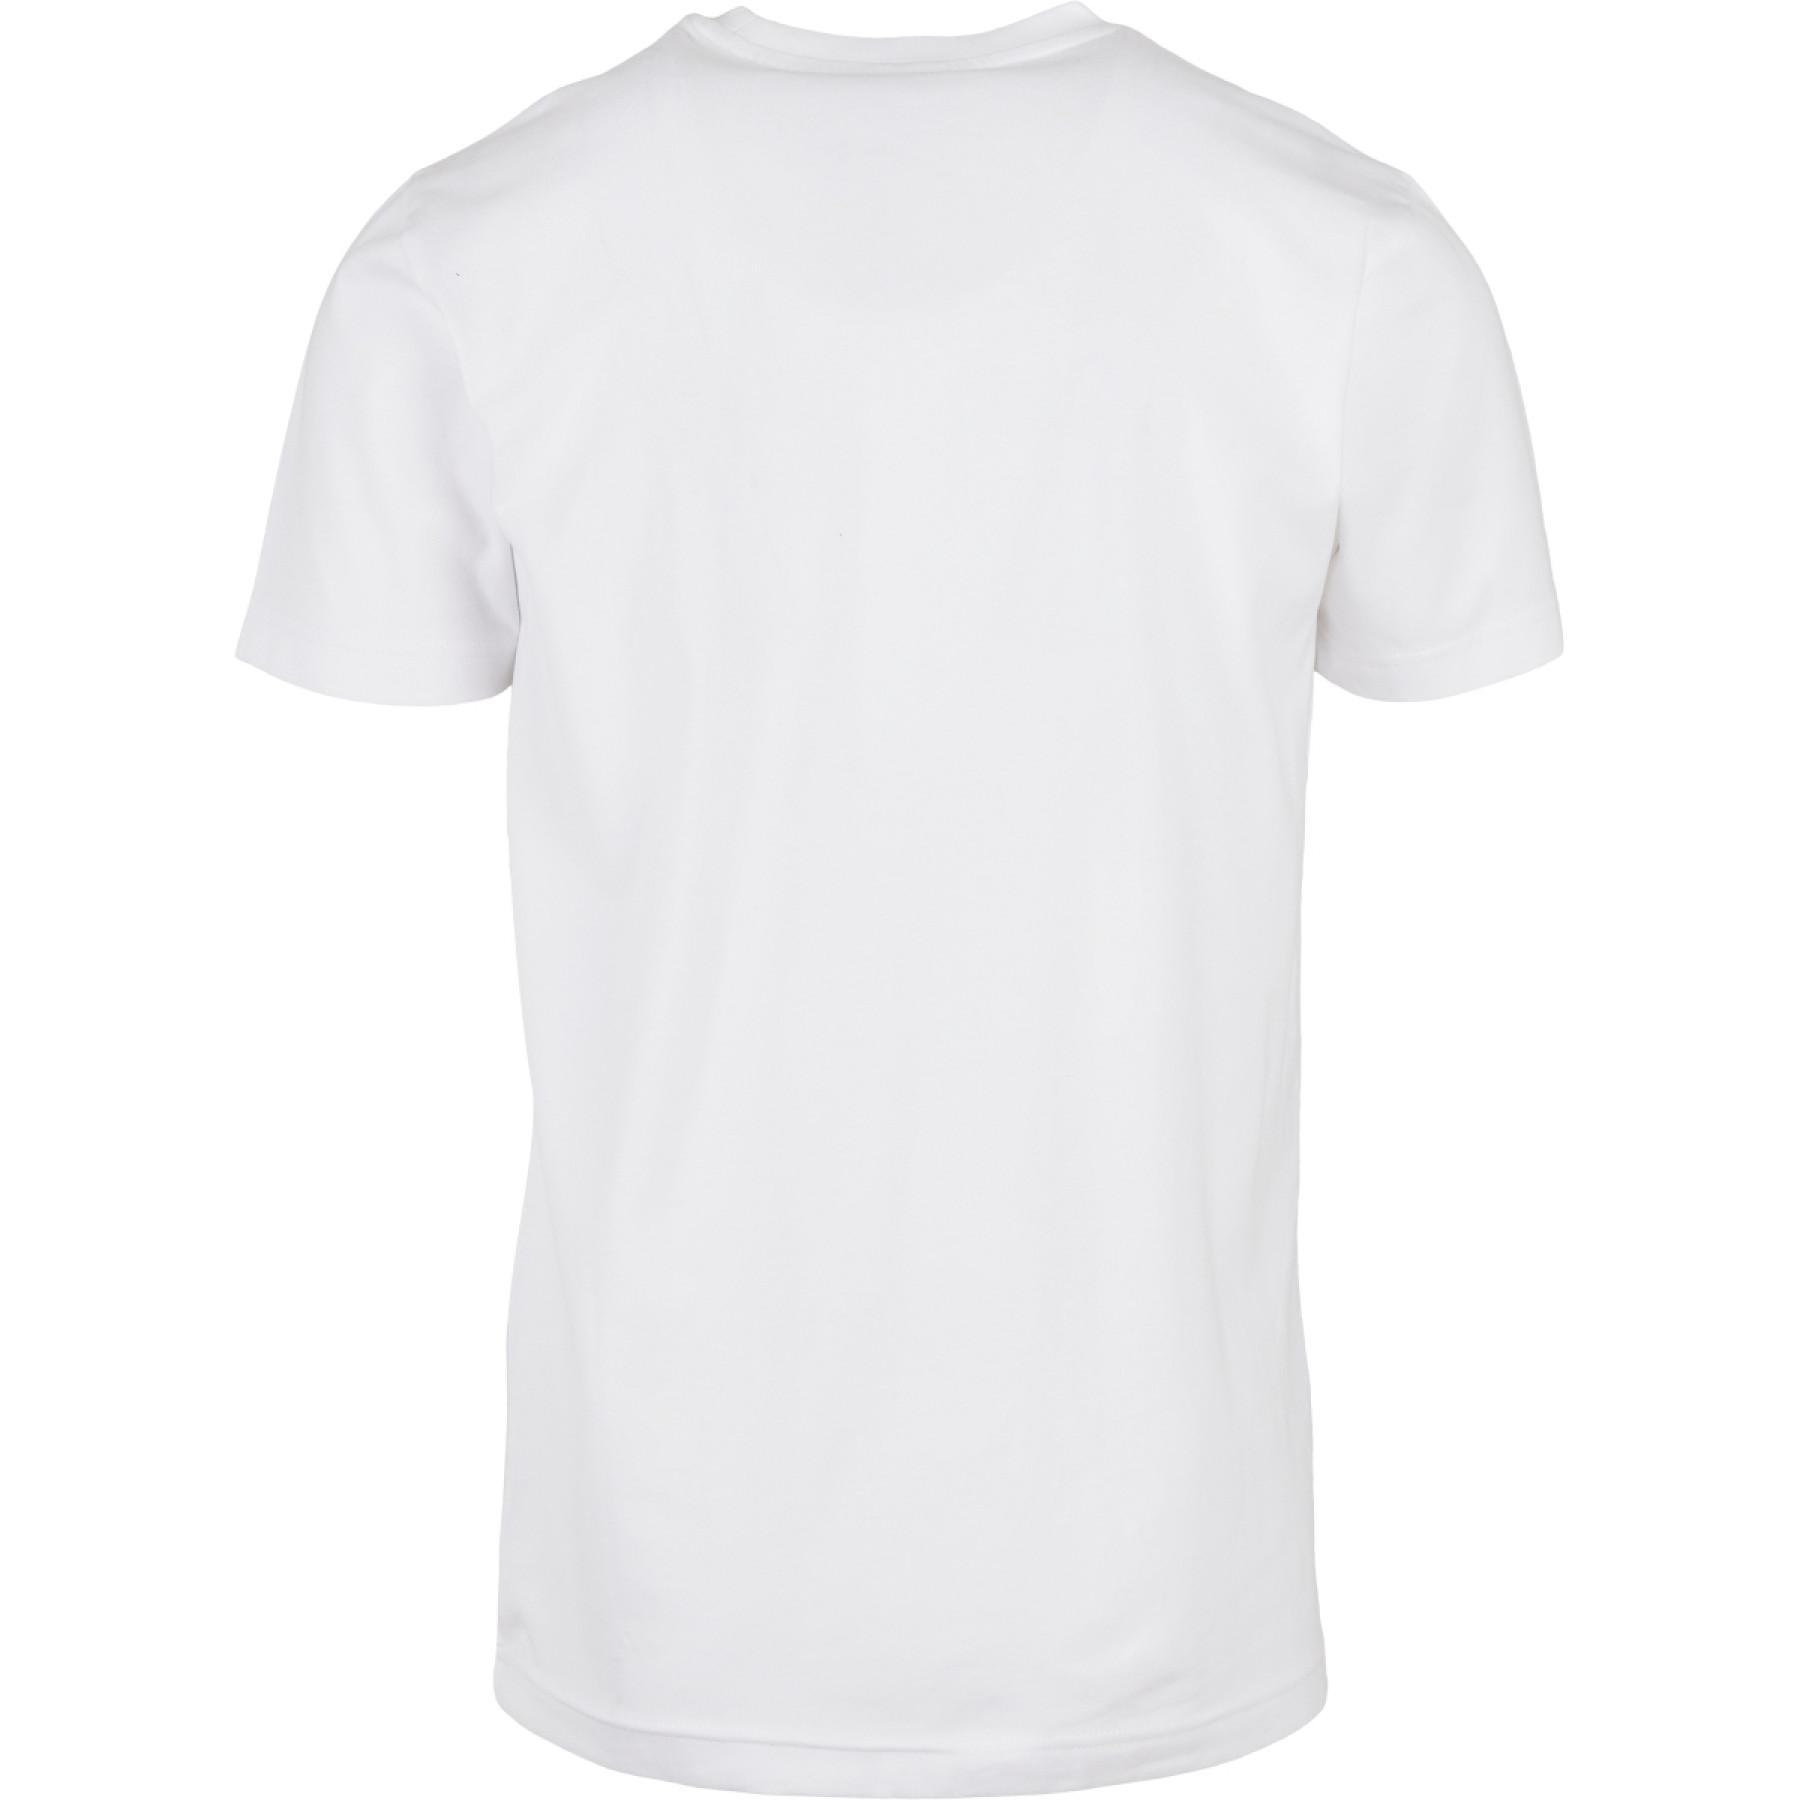 T-shirt Urban Classics coton organique basic pocket